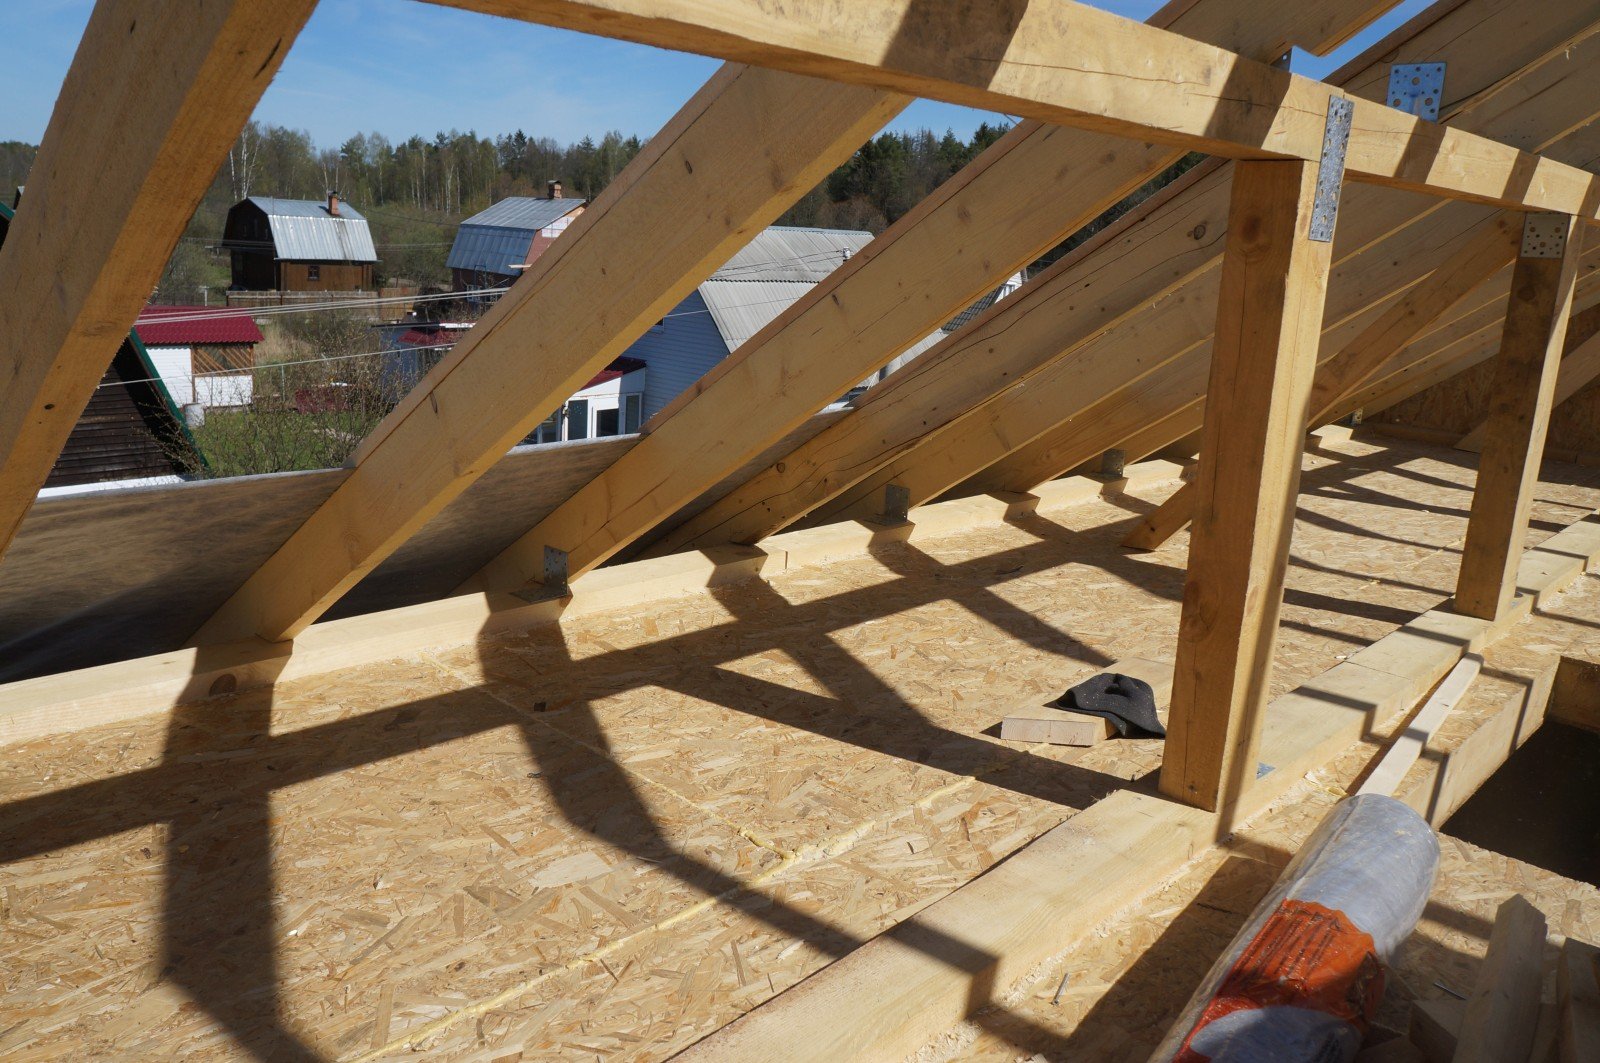 Как покрыть крышу профнастилом своими руками - строительство и ремонт